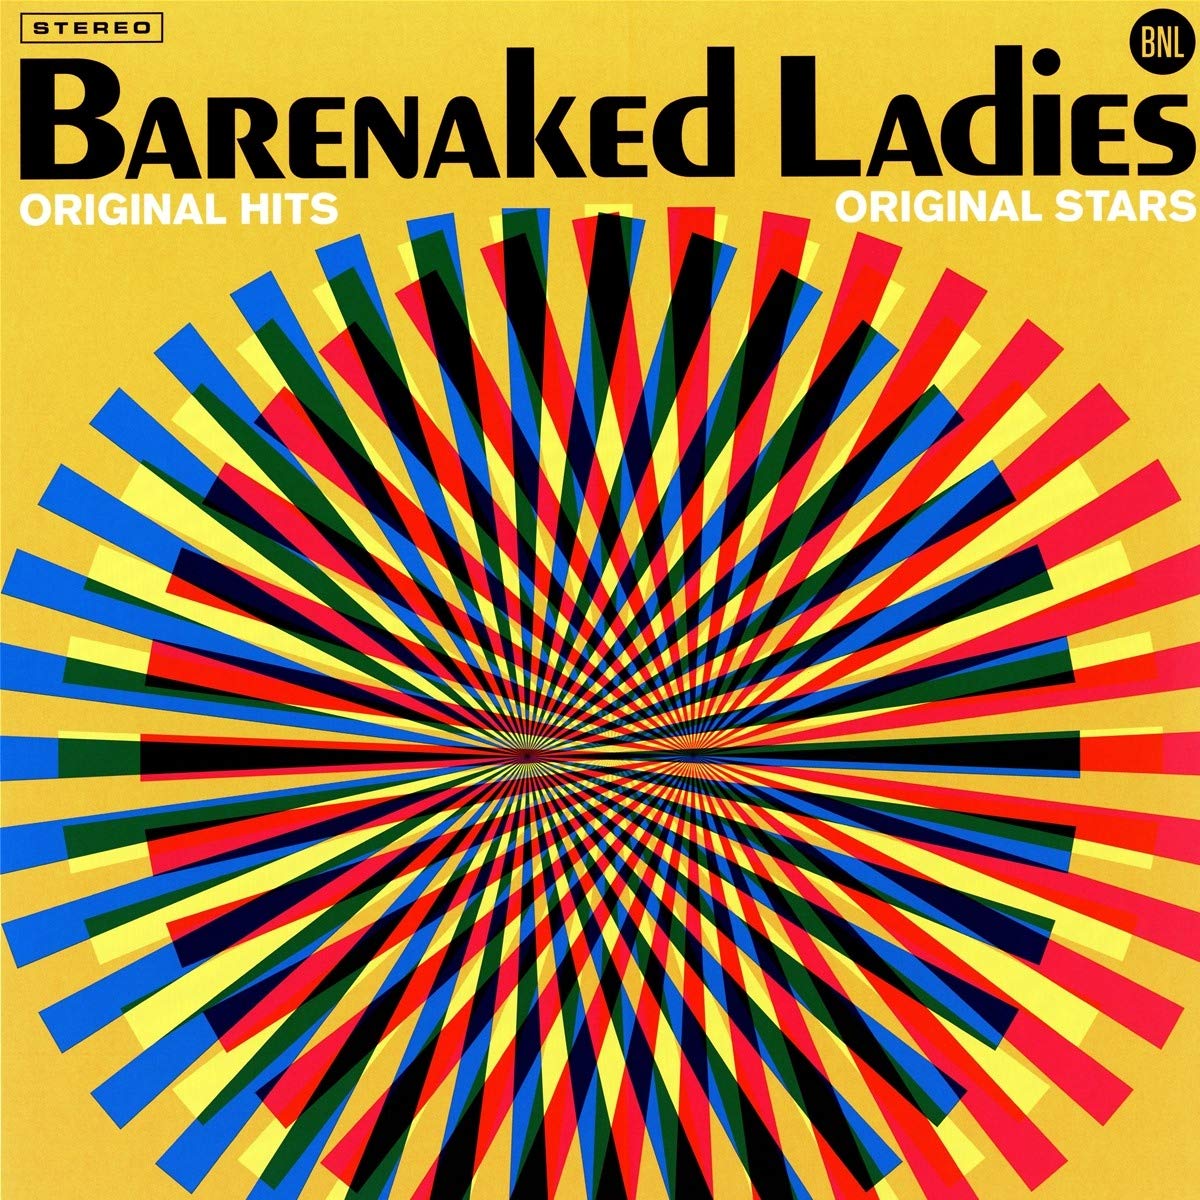 BARENAKED LADIES - ORIGINAL HITS ORIGINAL STARS - VINYL LP